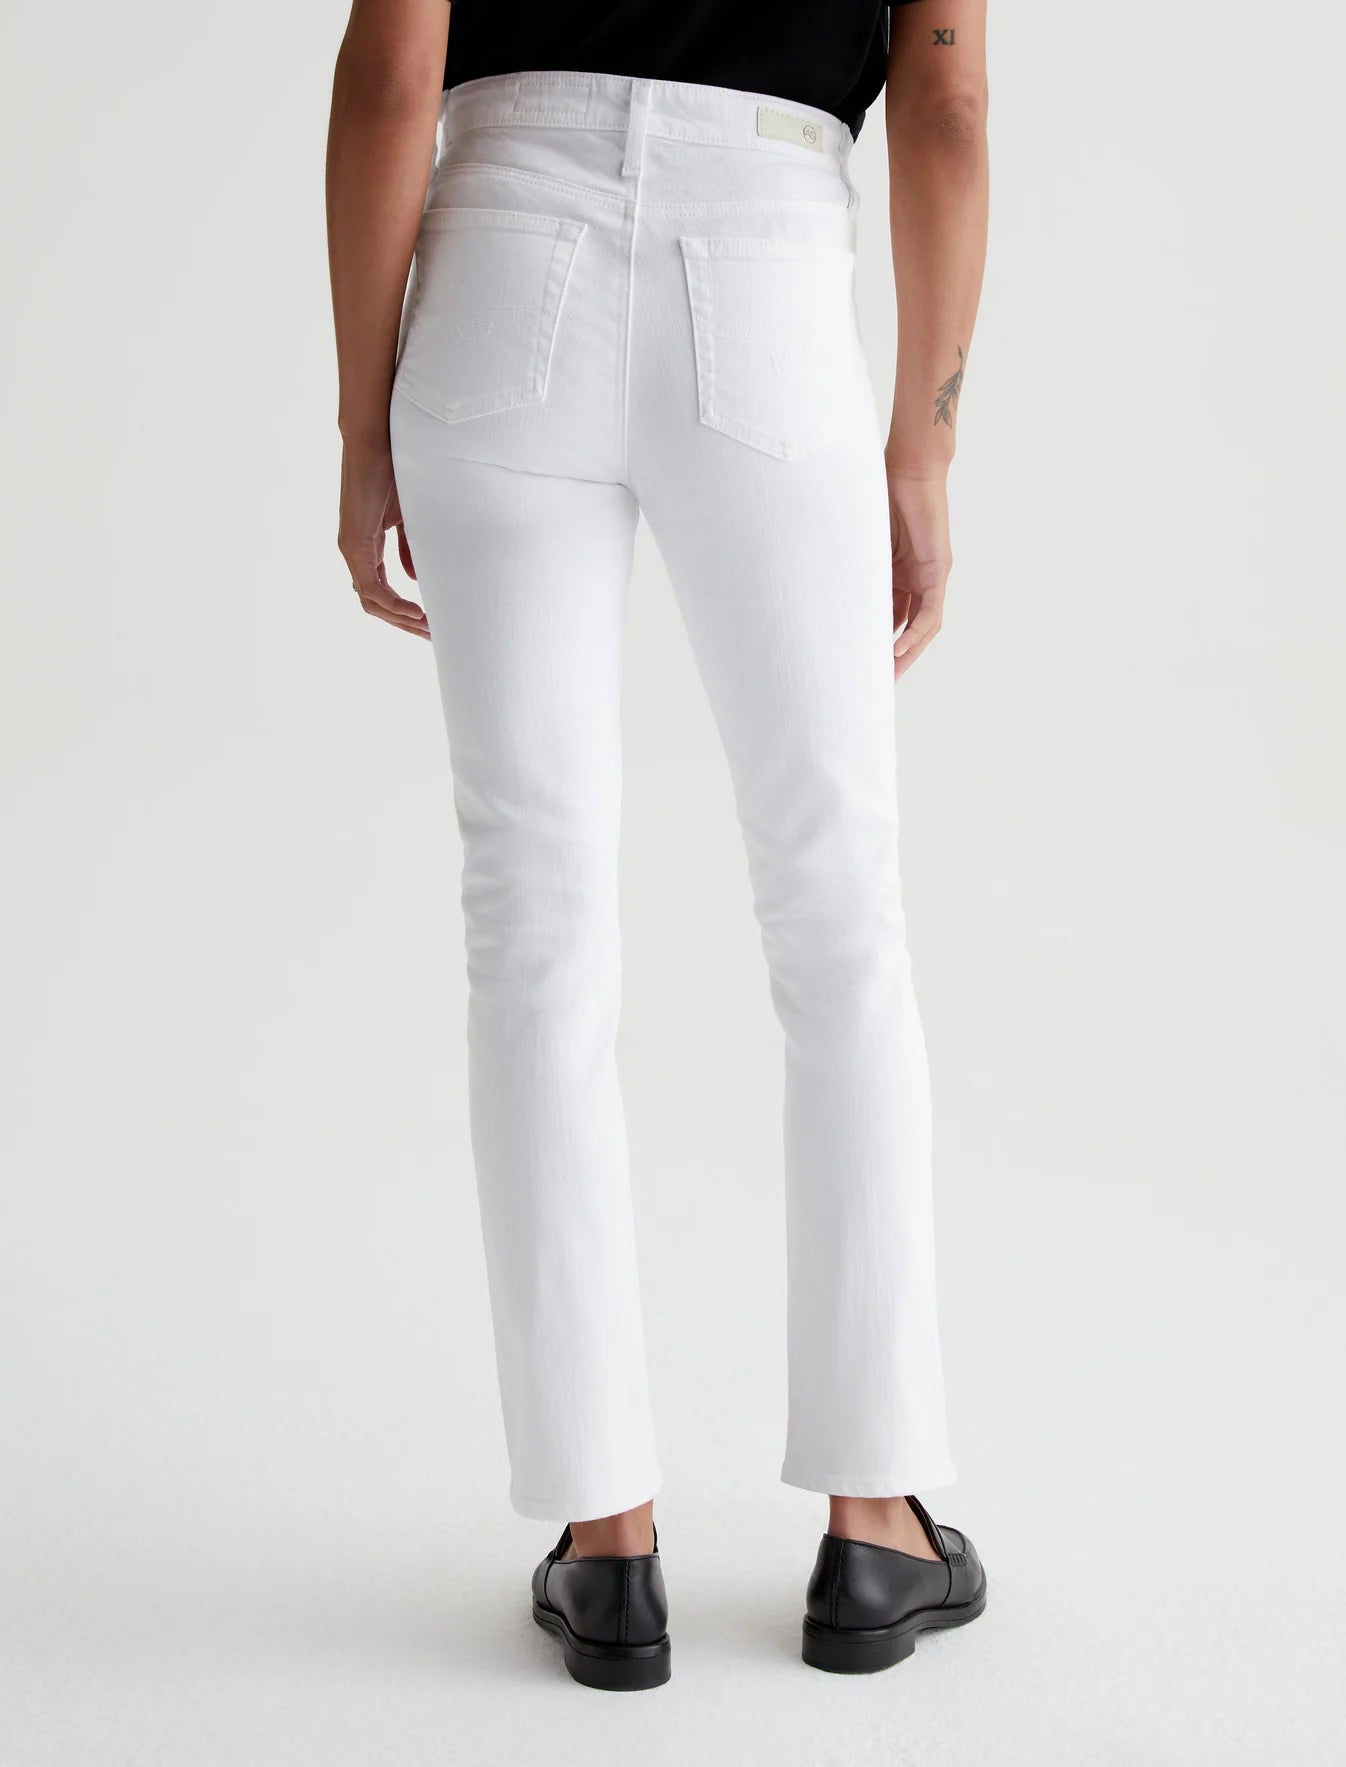 AG Jeans Mari in White